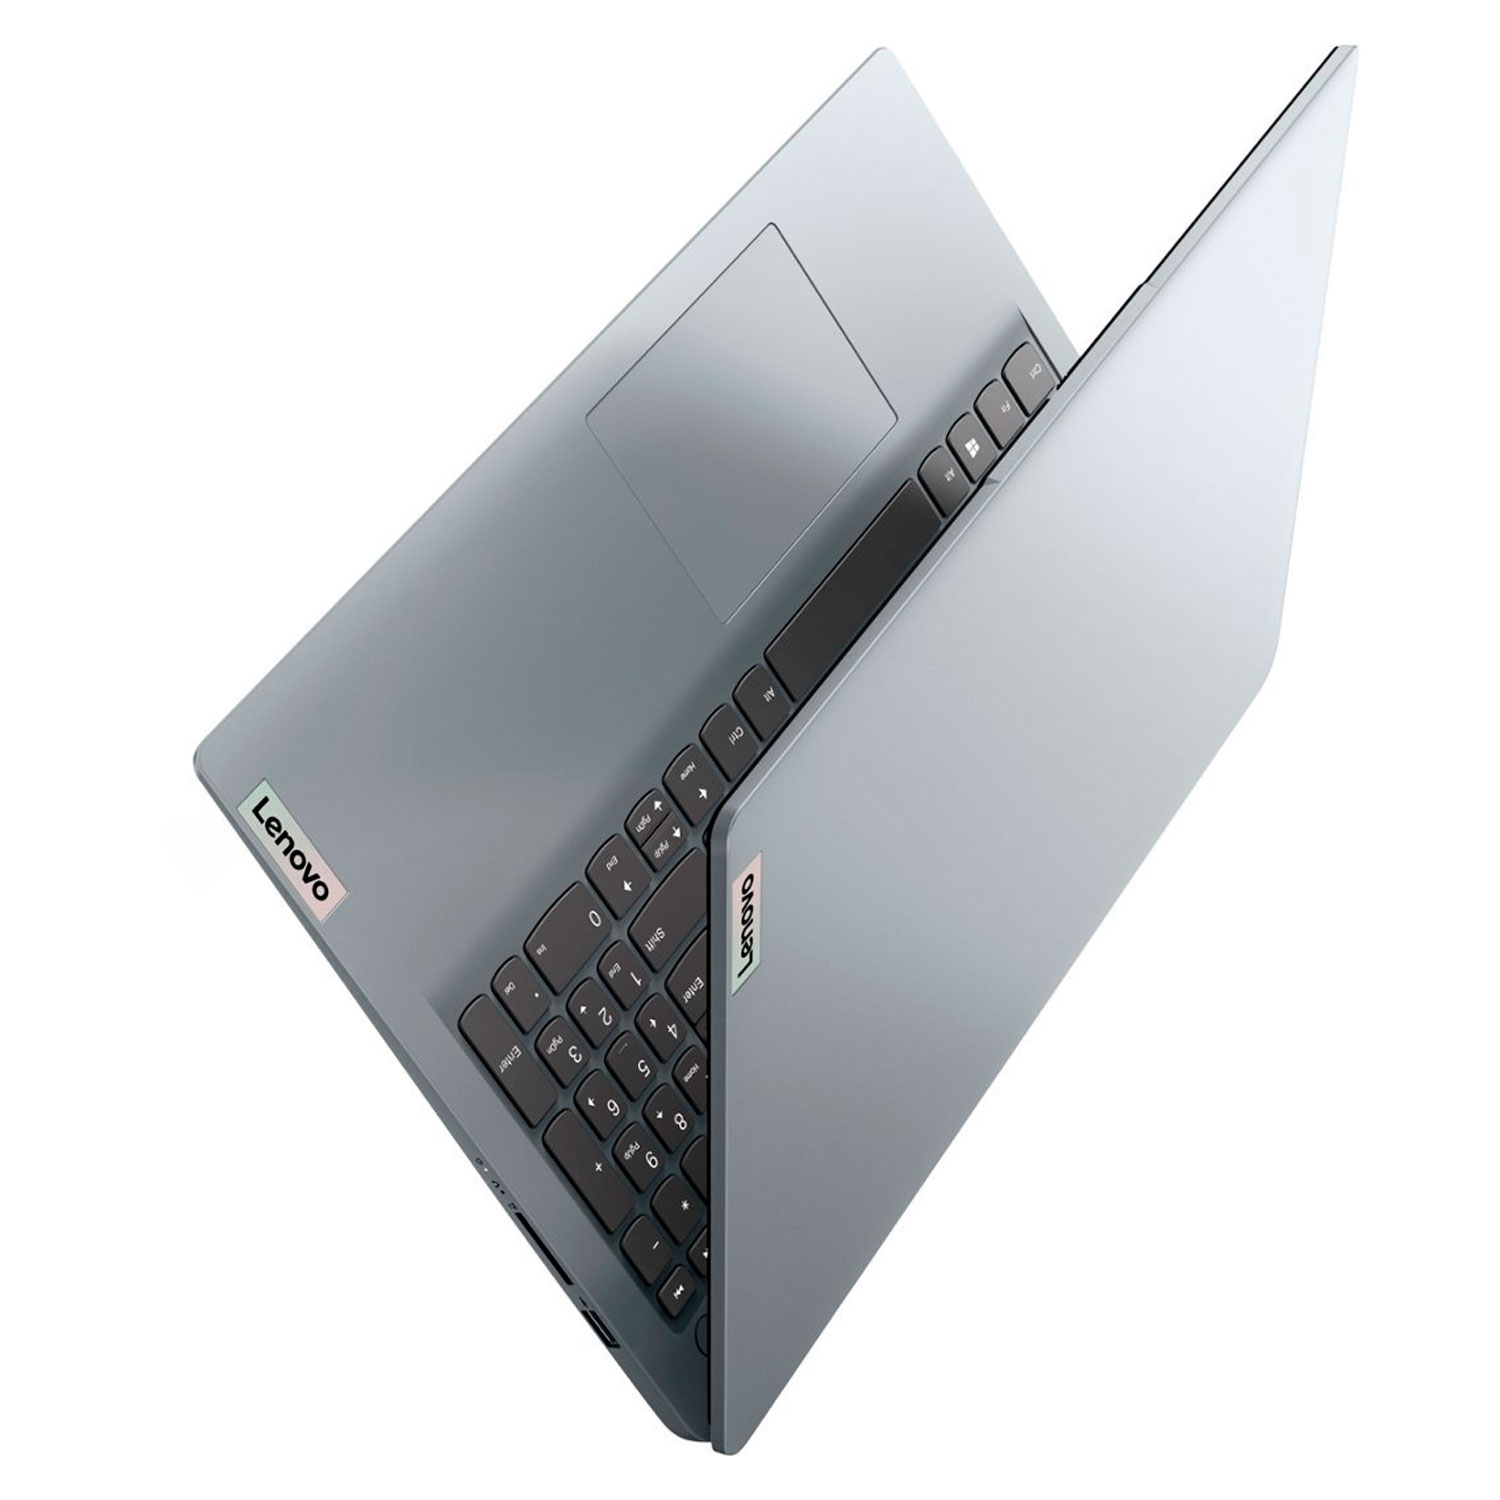 Notebook Lenovo IdeaPad 1 82R400DTUS 15.6" AMD Ryzen 7 5700U 512GB SSD 16GB RAM - Cinza